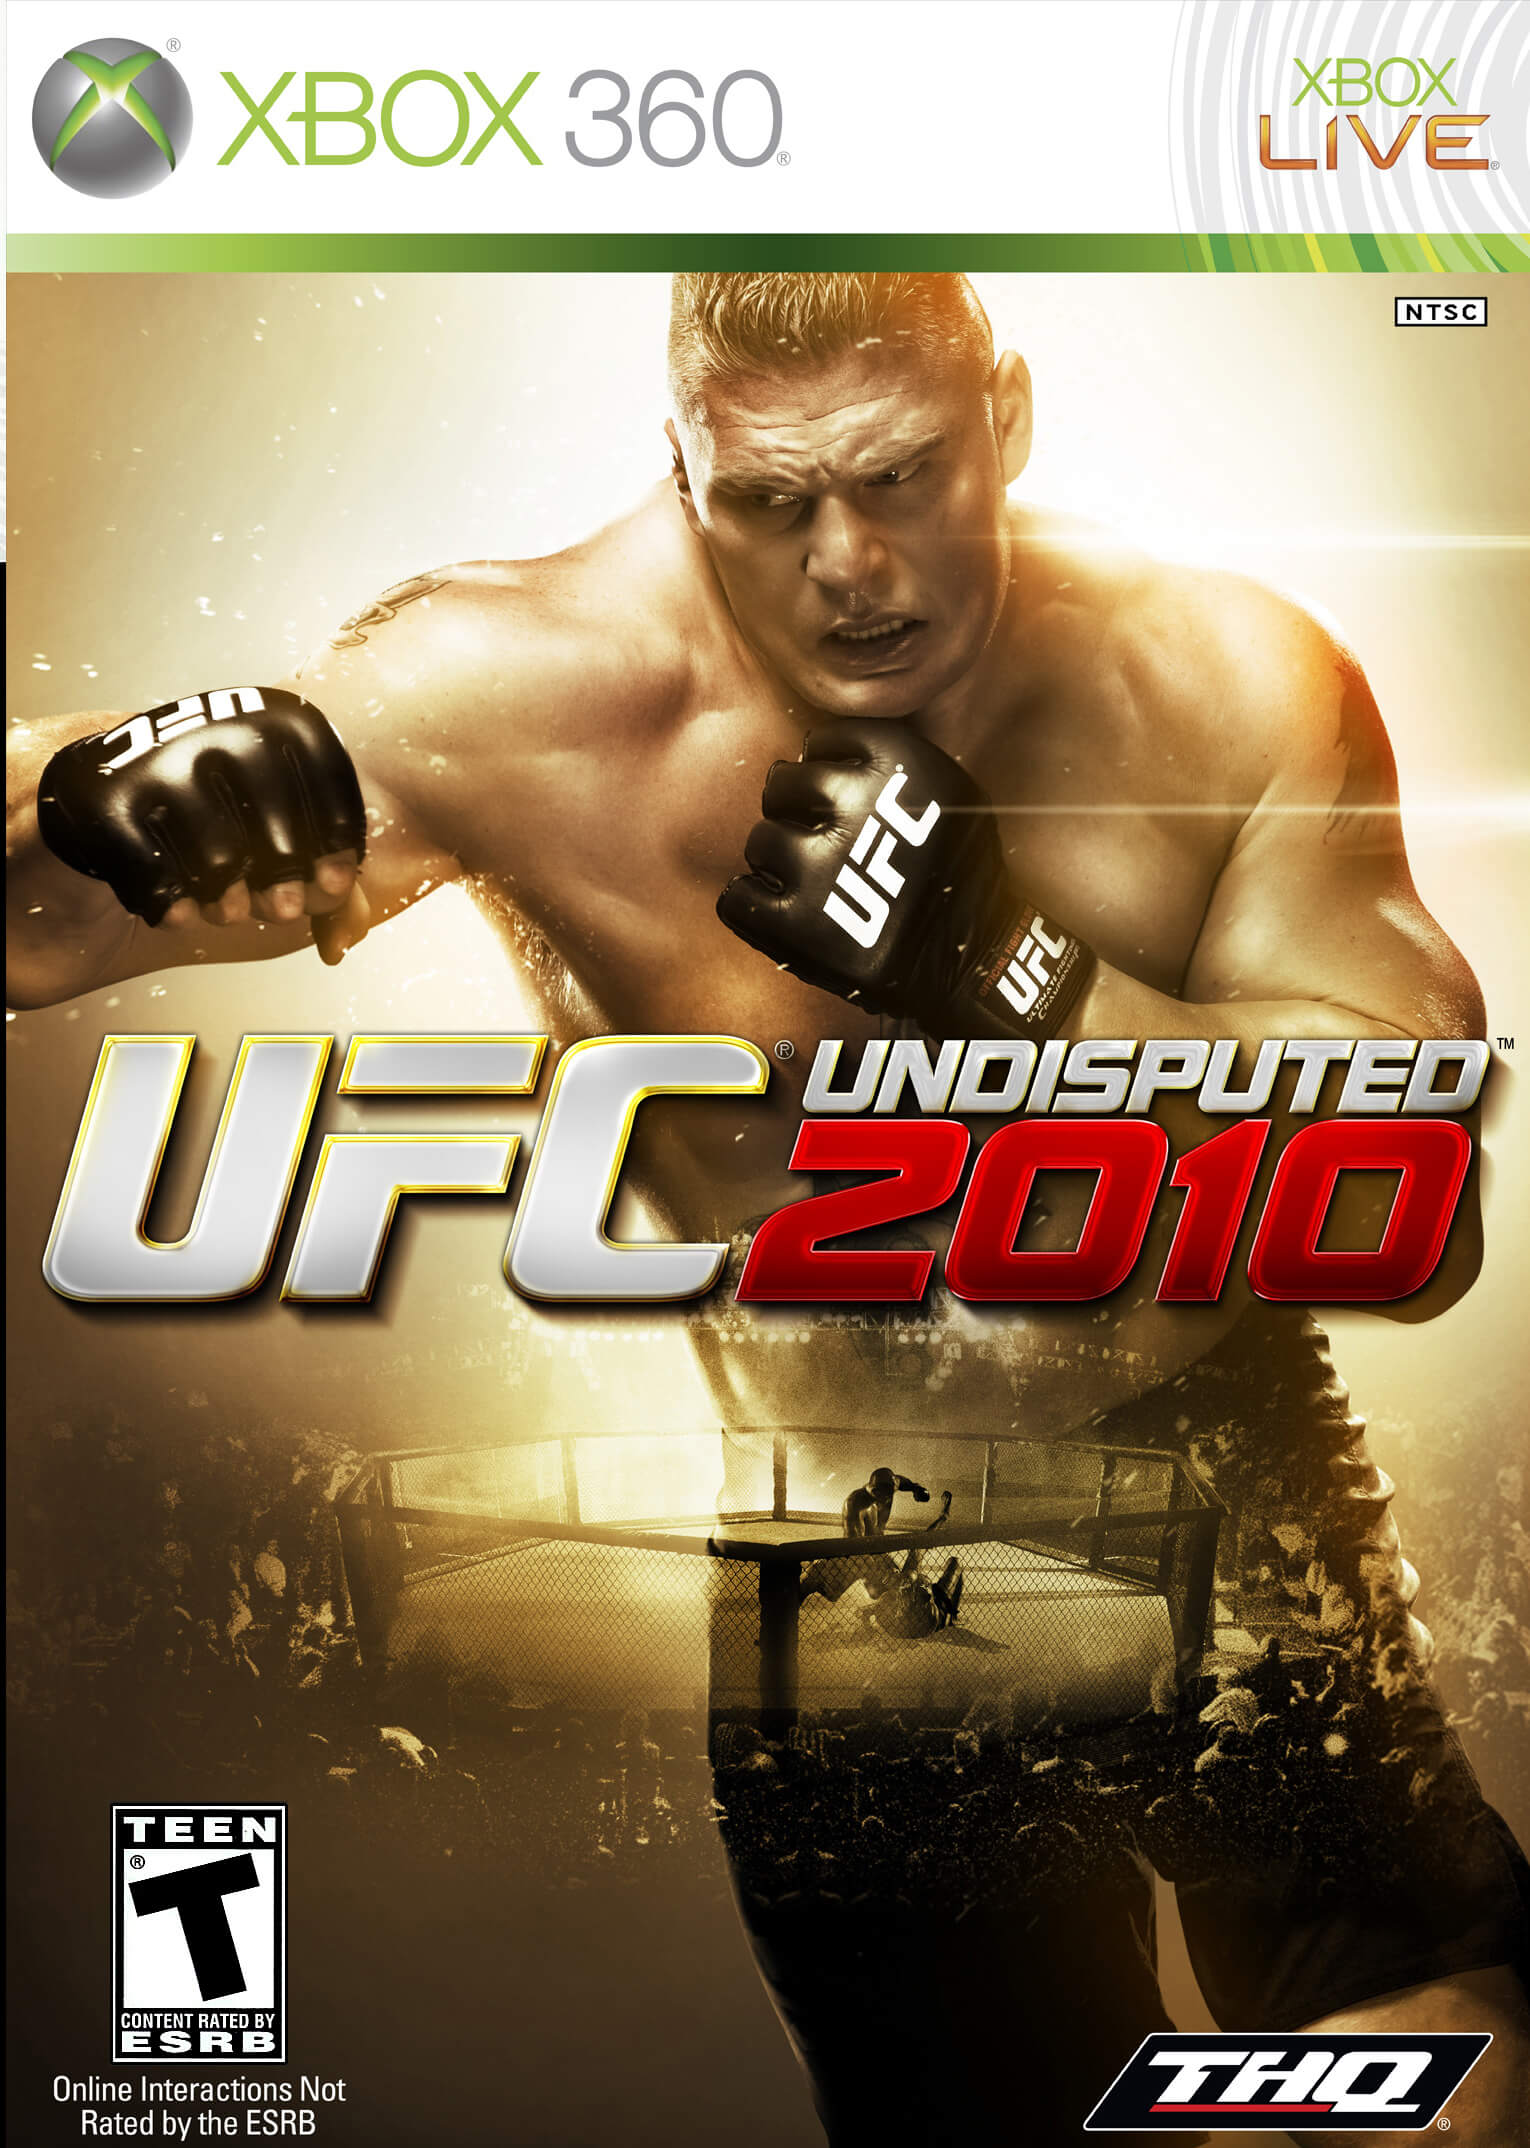 UFC Undisputed 2010